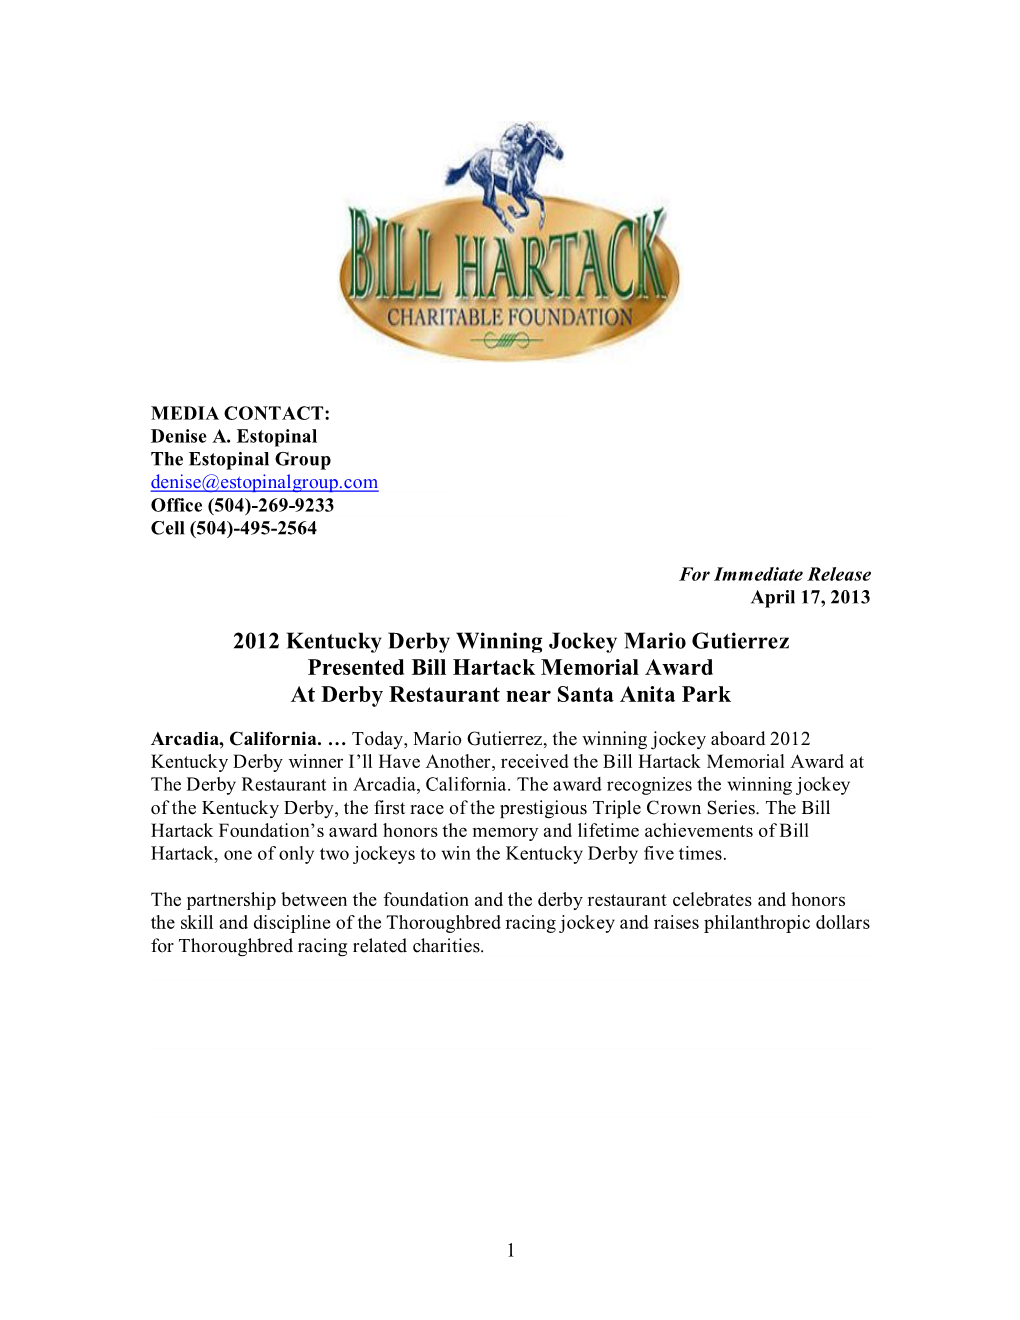 2012 Kentucky Derby Winning Jockey Mario Gutierrez Presented Bill Hartack Memorial Award at Derby Restaurant Near Santa Anita Park